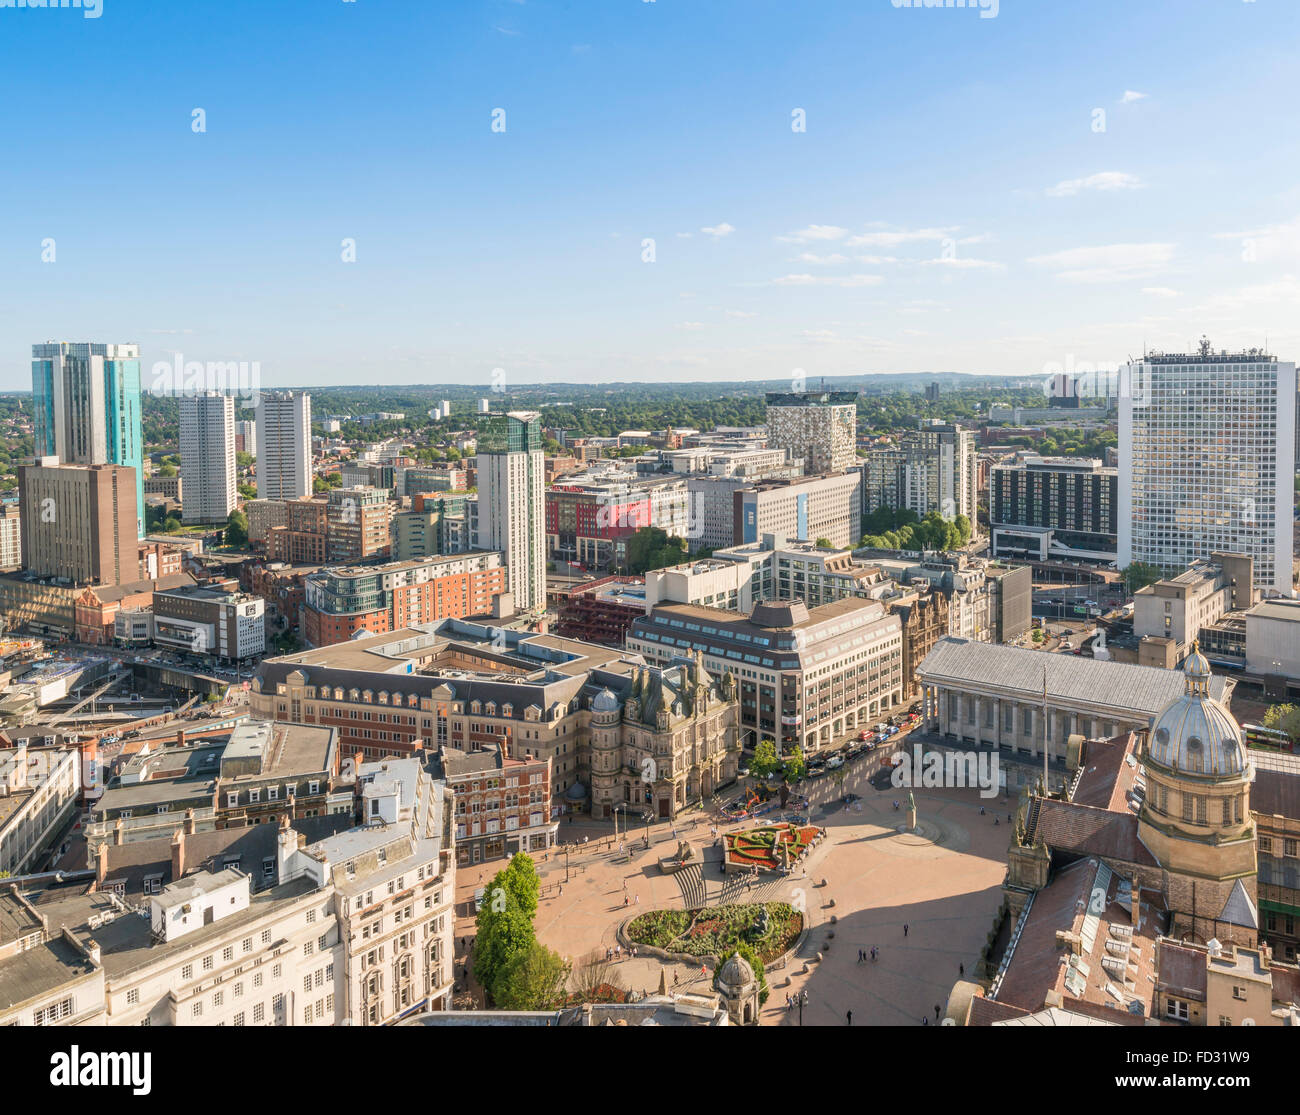 Una veduta aerea del centro cittadino di Birmingham. Foto Stock